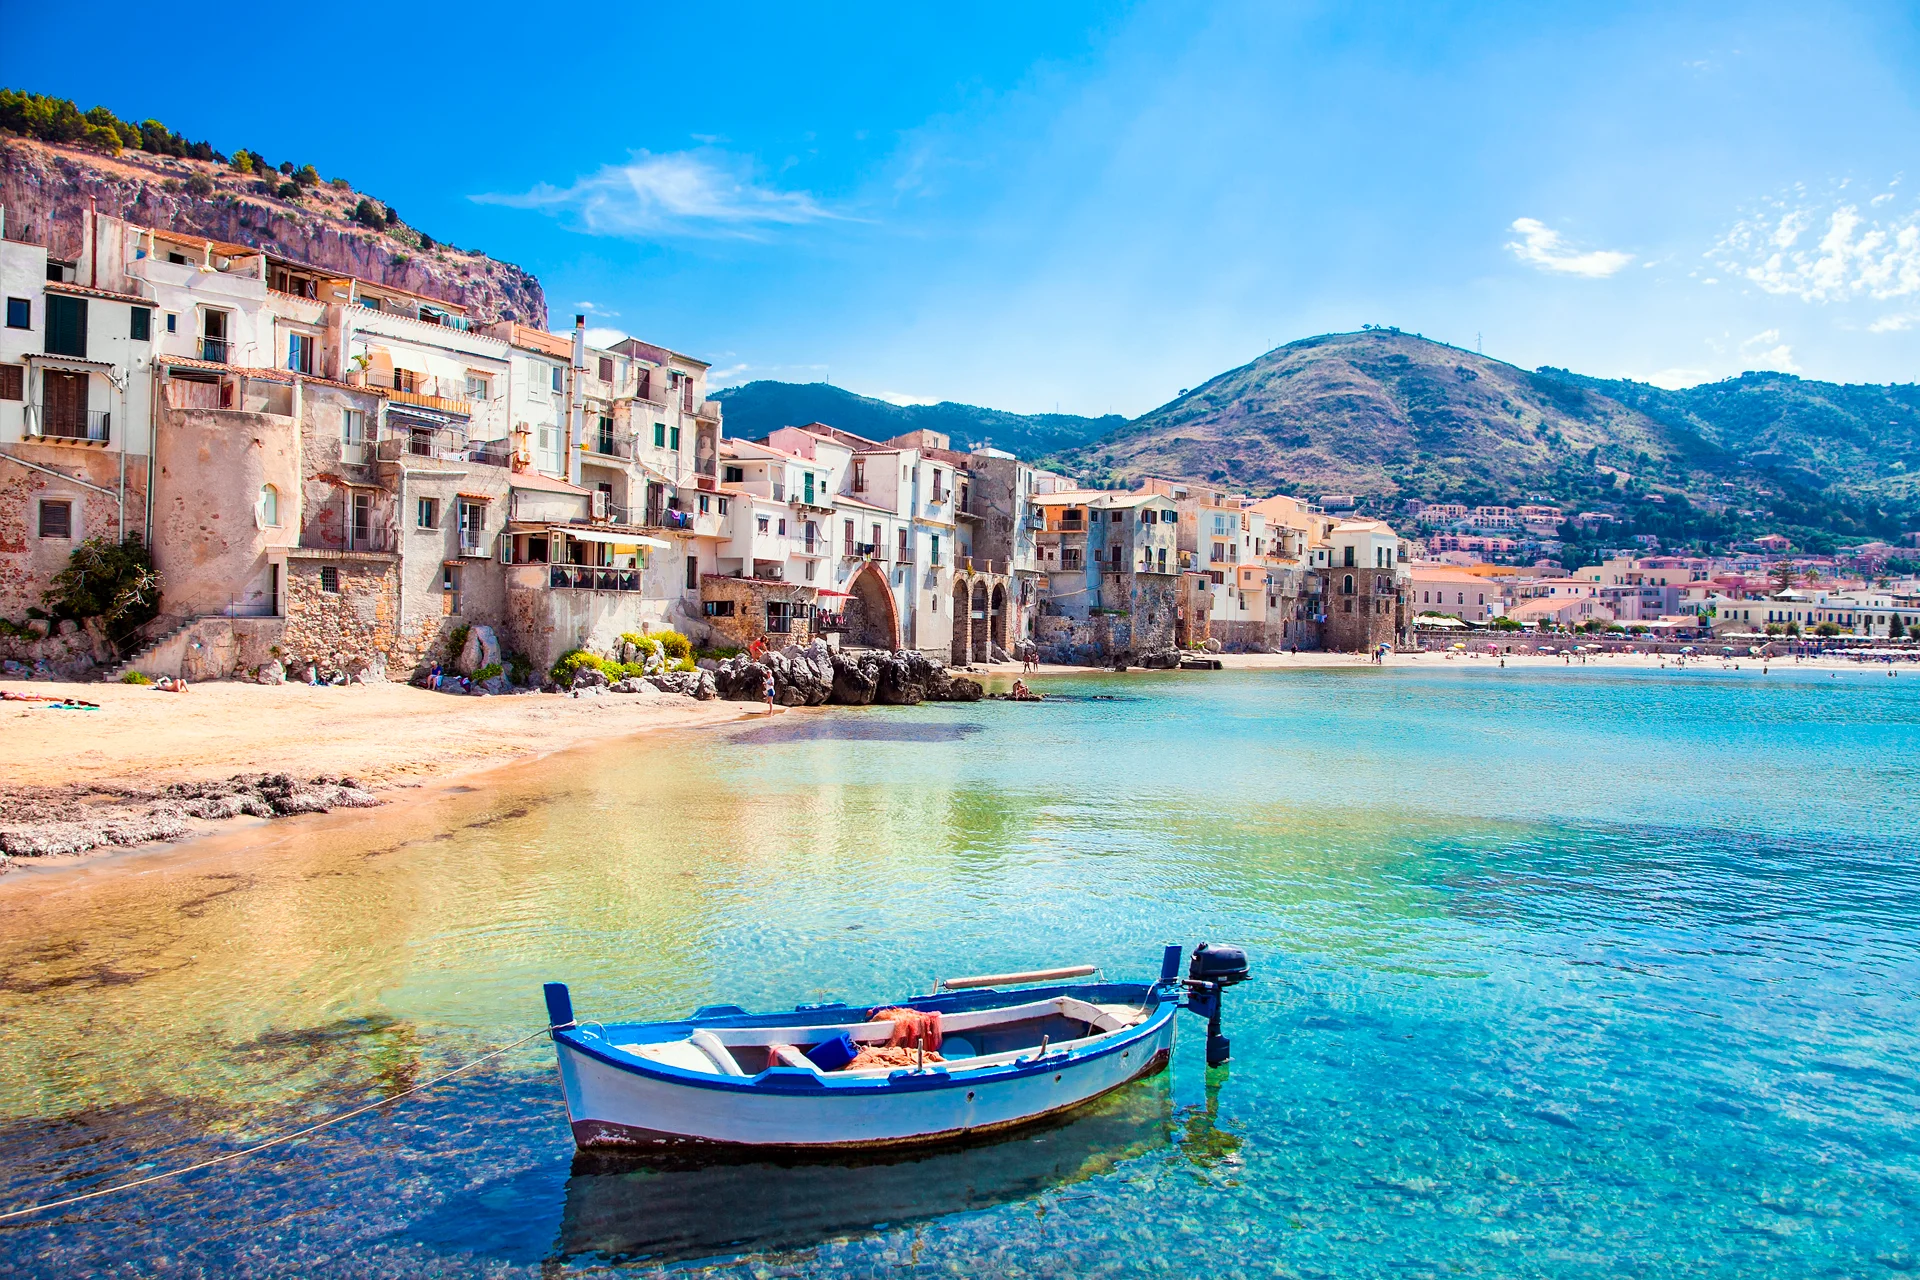 Centro storico in Sicilia con spiaggia e barca a vela sull'acqua cristallina